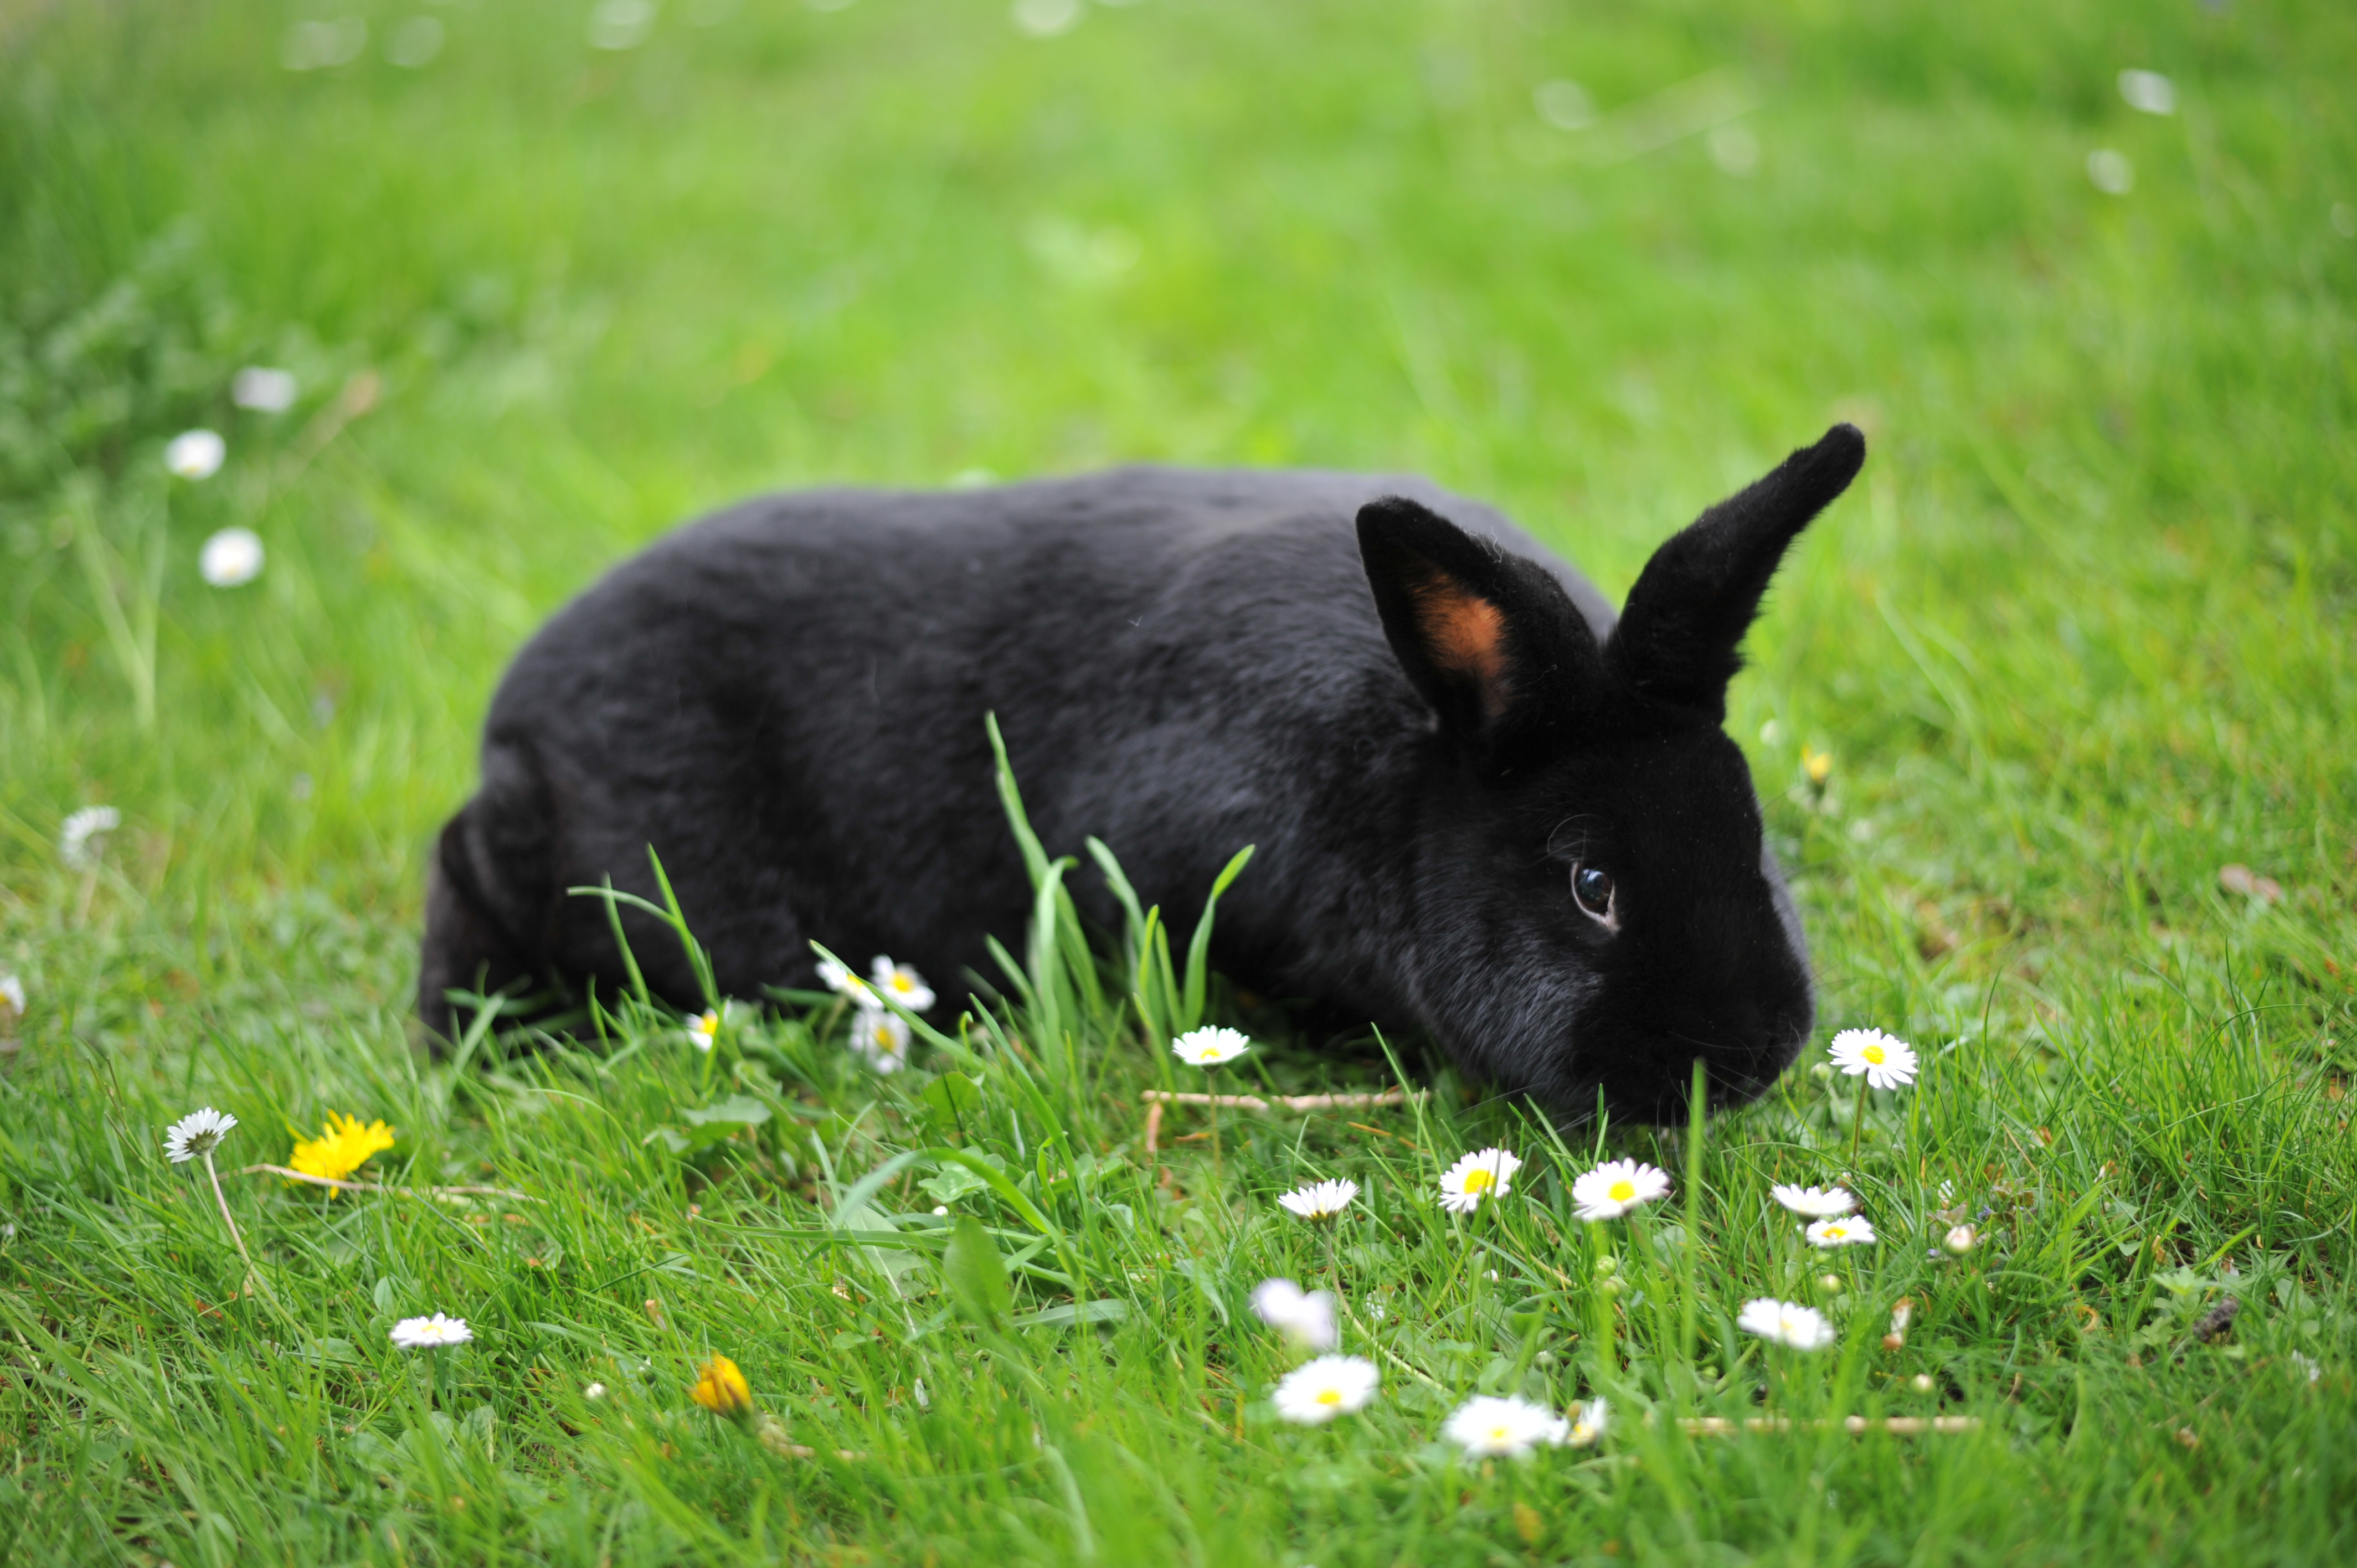 Alaska rabbit - Wikipedia